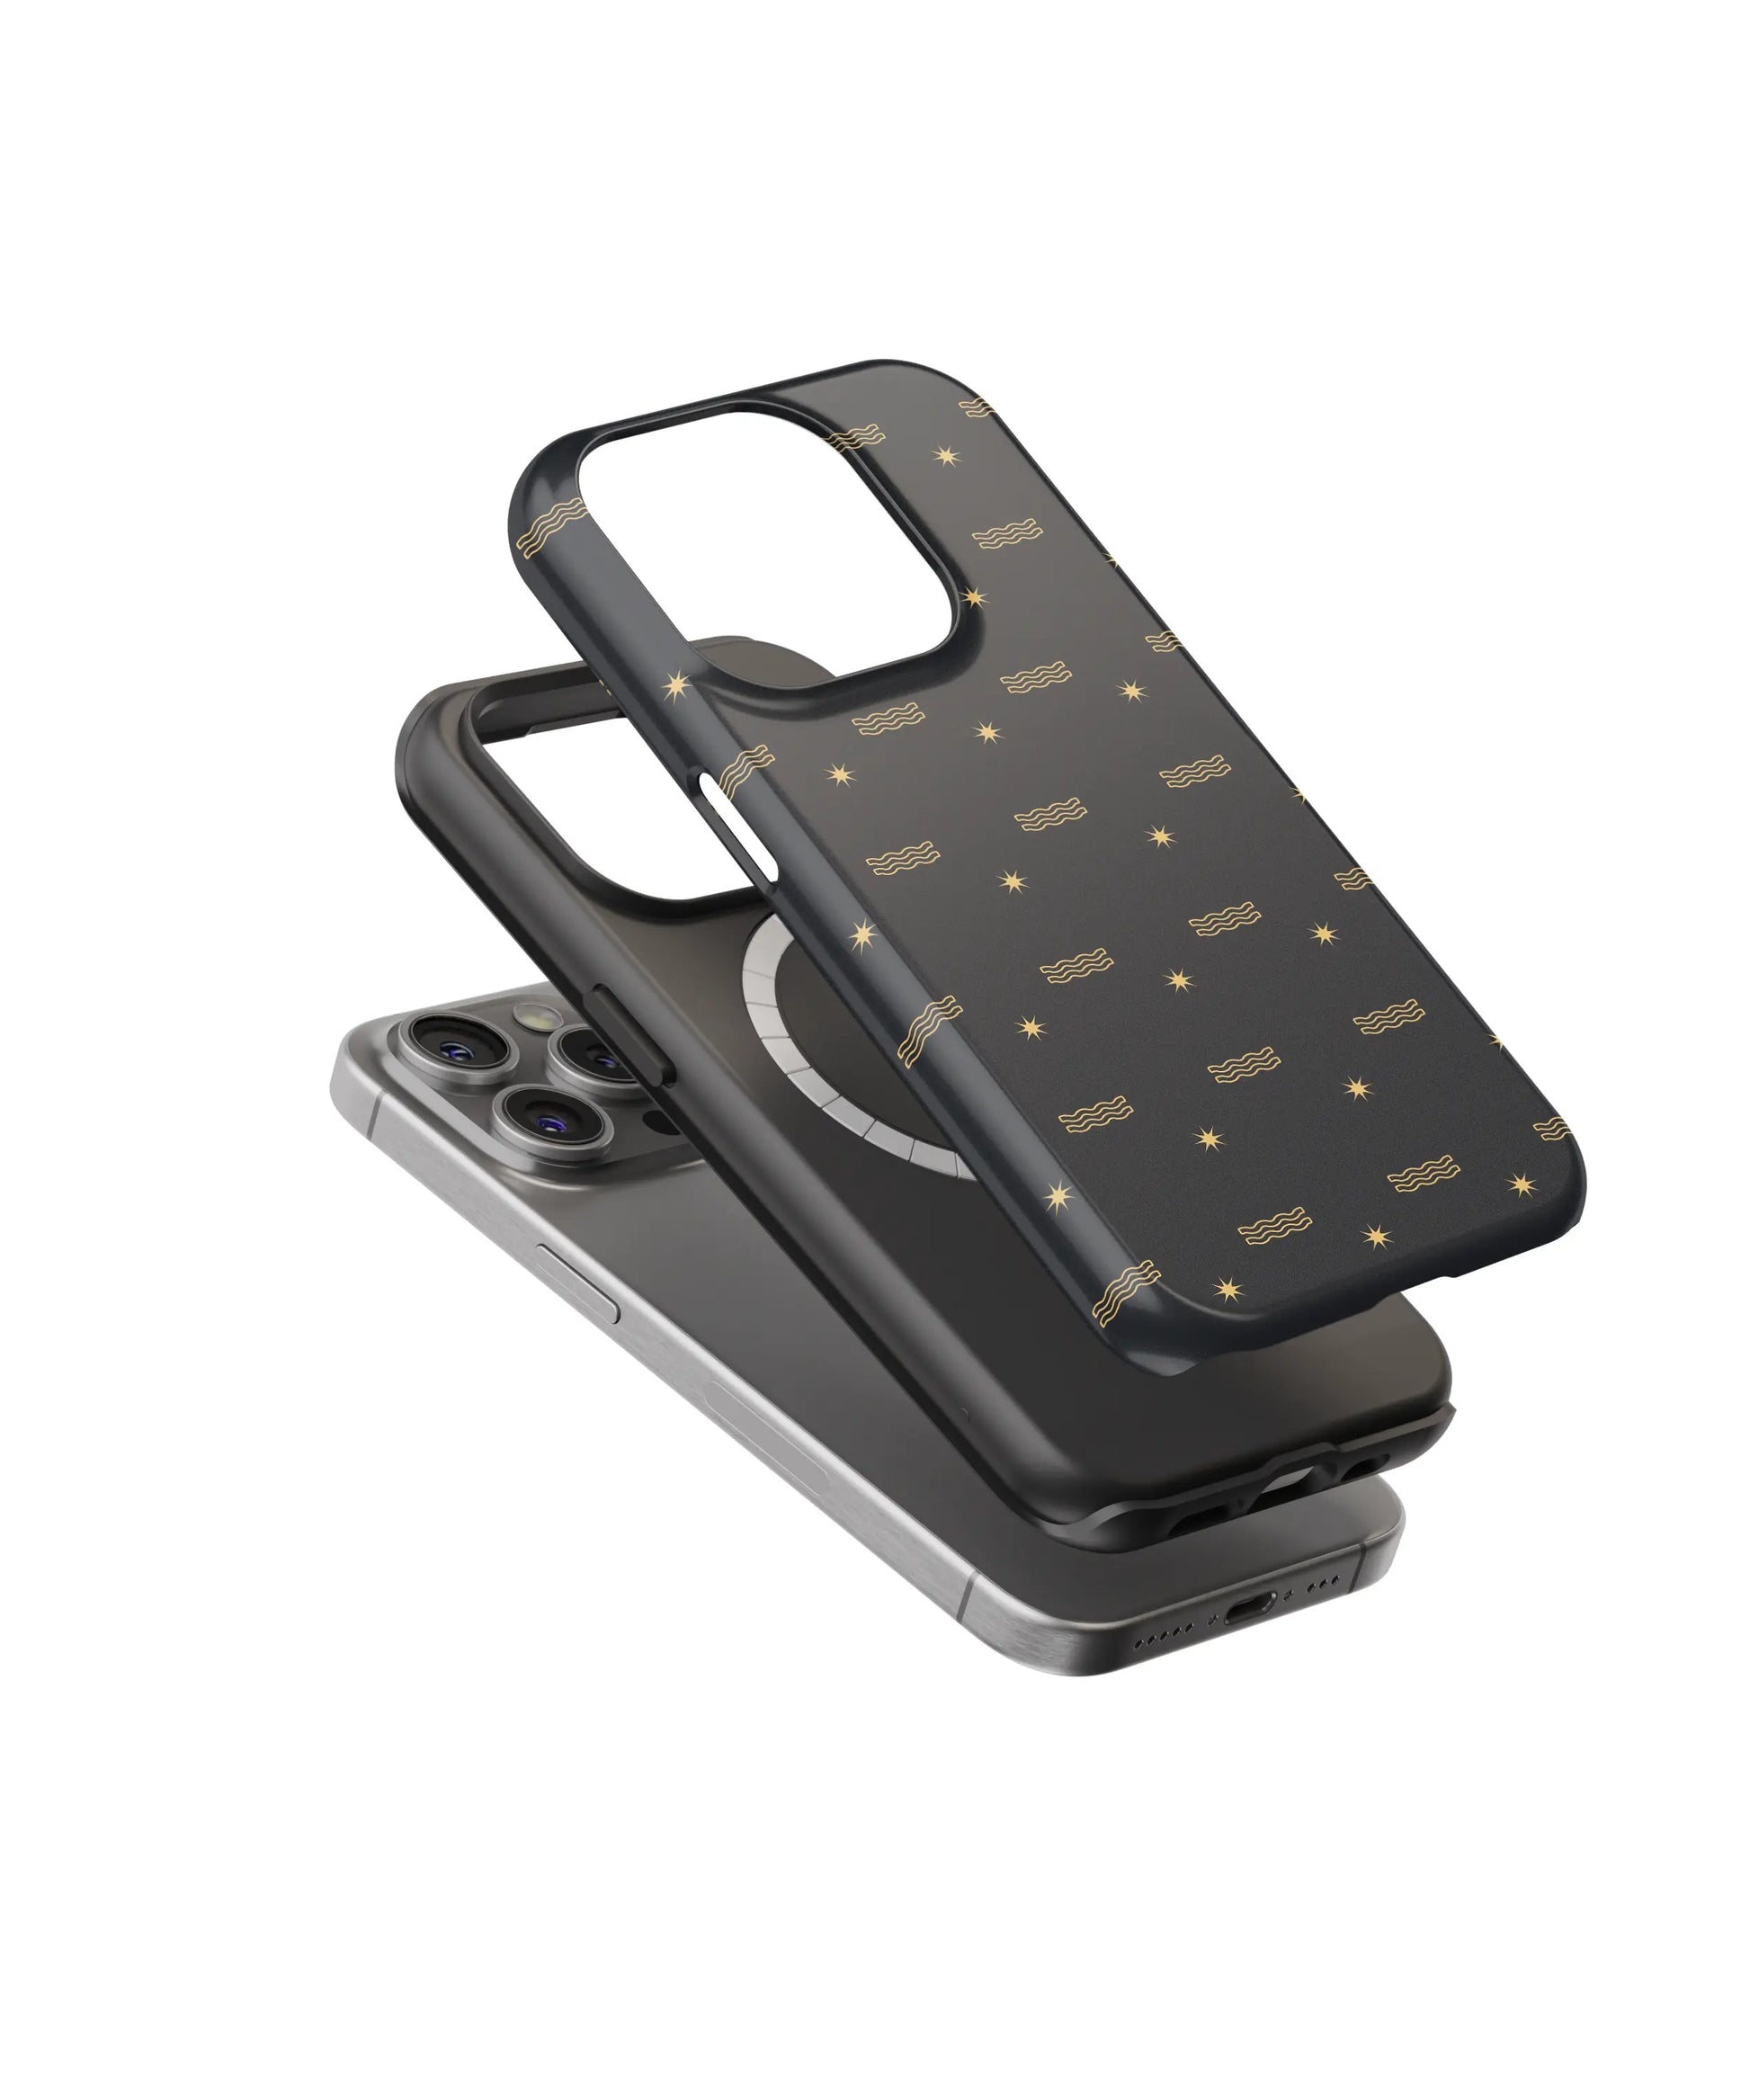 Aquarius Aura: Futuristic Phone Guard - iPhone Case